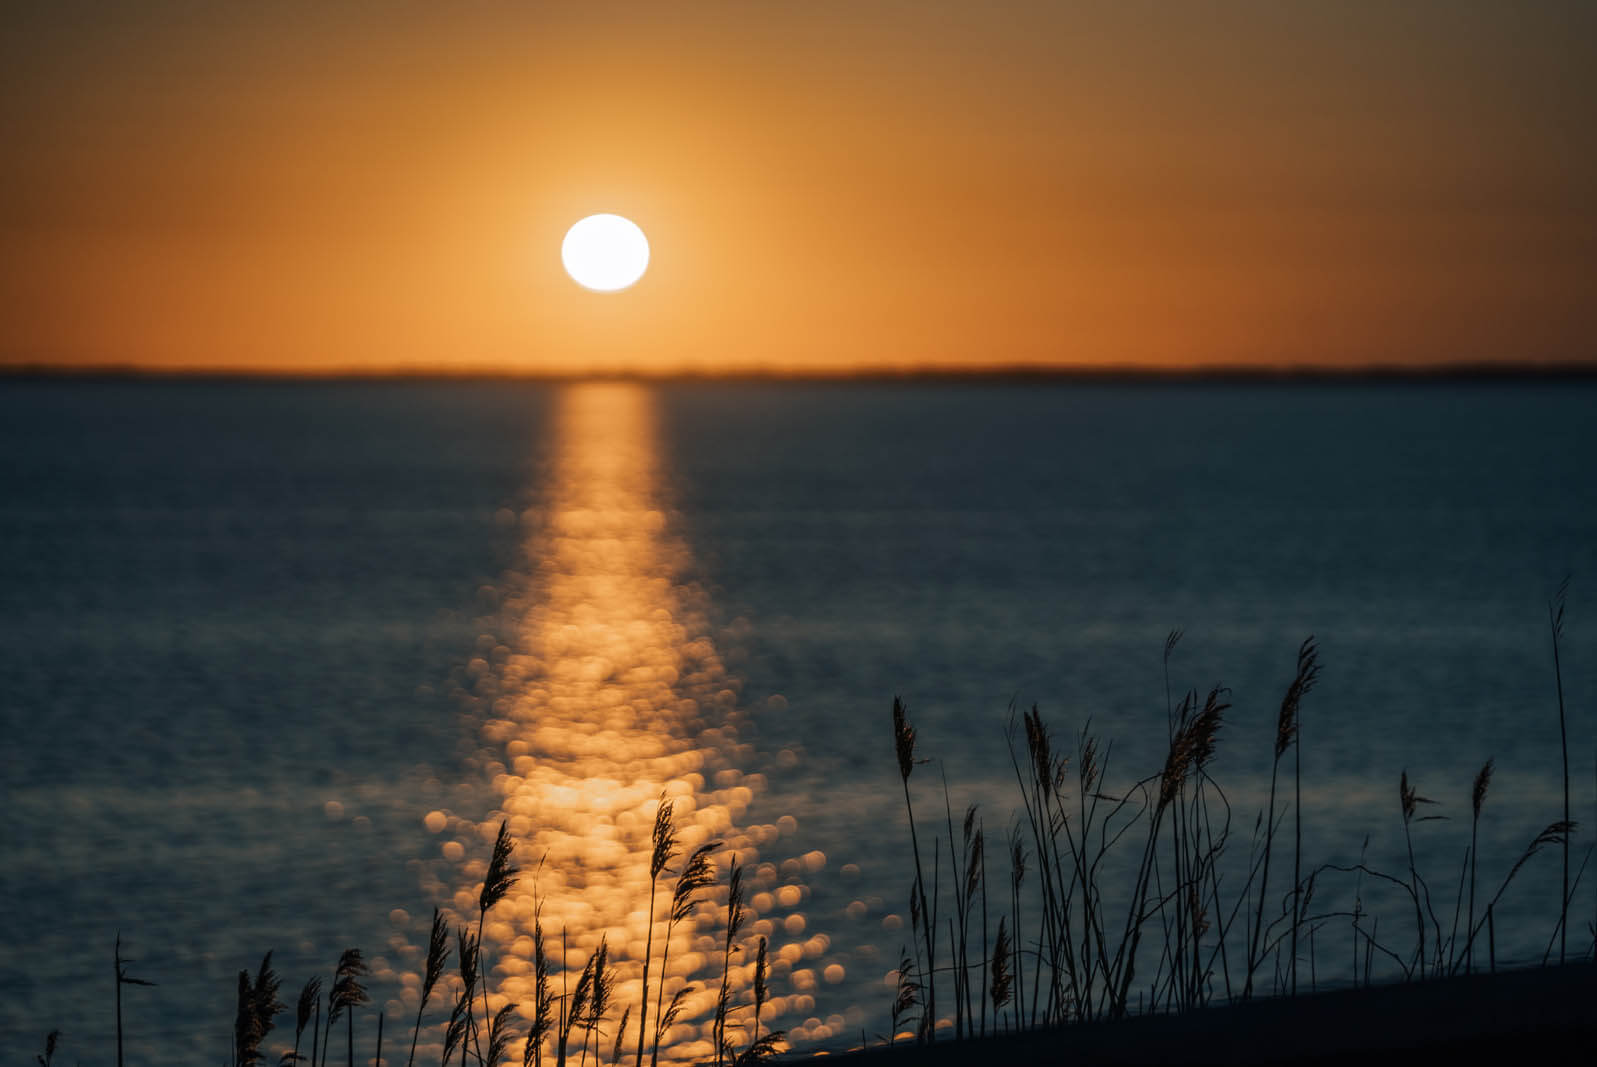 sunset view from Montauket in Hamptons New York